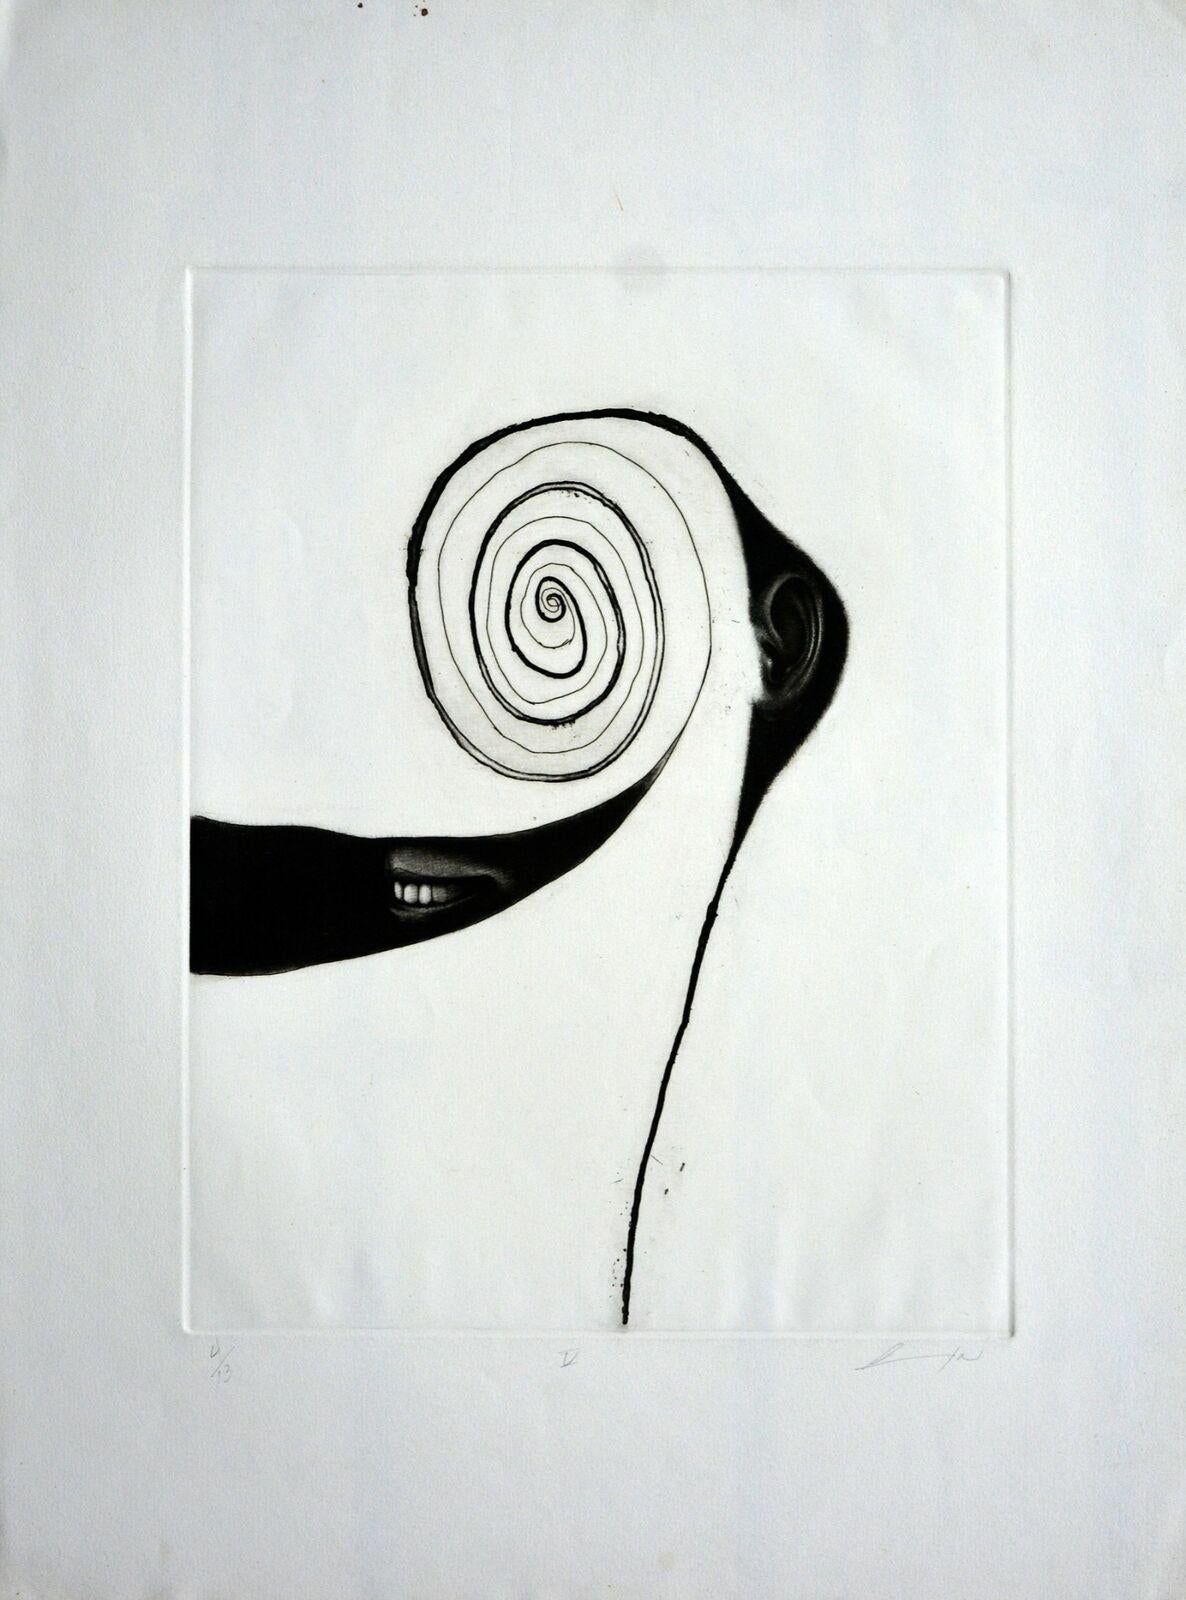 Luis LARA (Mexiko, 1972)
'V', 2000
Schabkunst auf Papier Velin Arches 300 g.
29,2 x 22,1 Zoll (74 x 56 cm)
Auflage von 13
ID: LAL-302
Ungerahmt